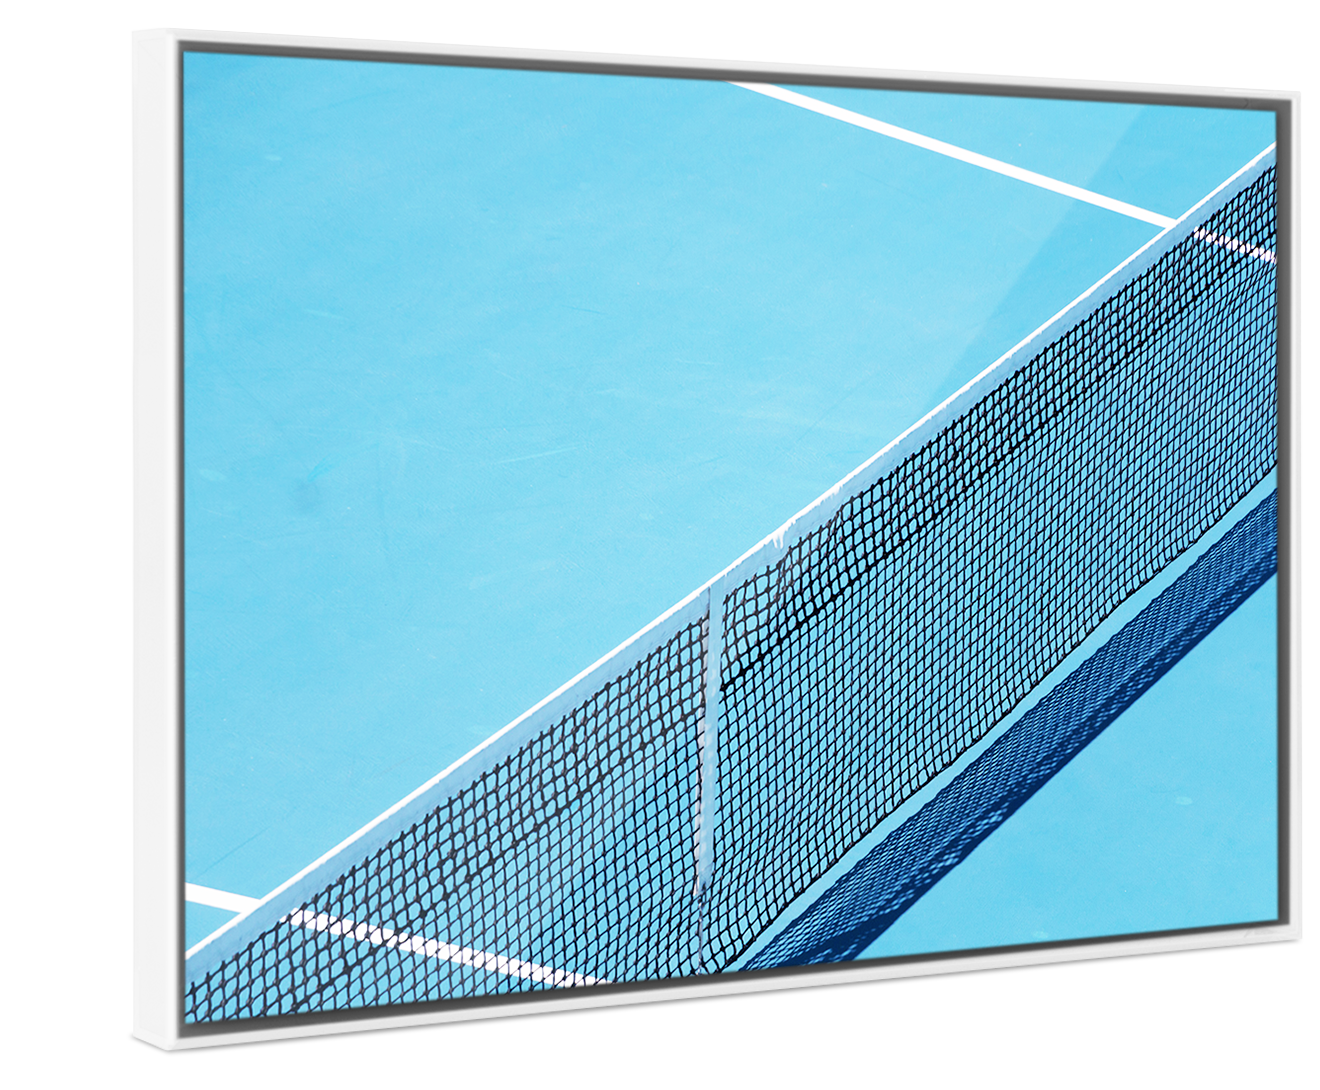 A bird's eye view of a tennis net on a blue tennis court in a white Pop Art Frame.